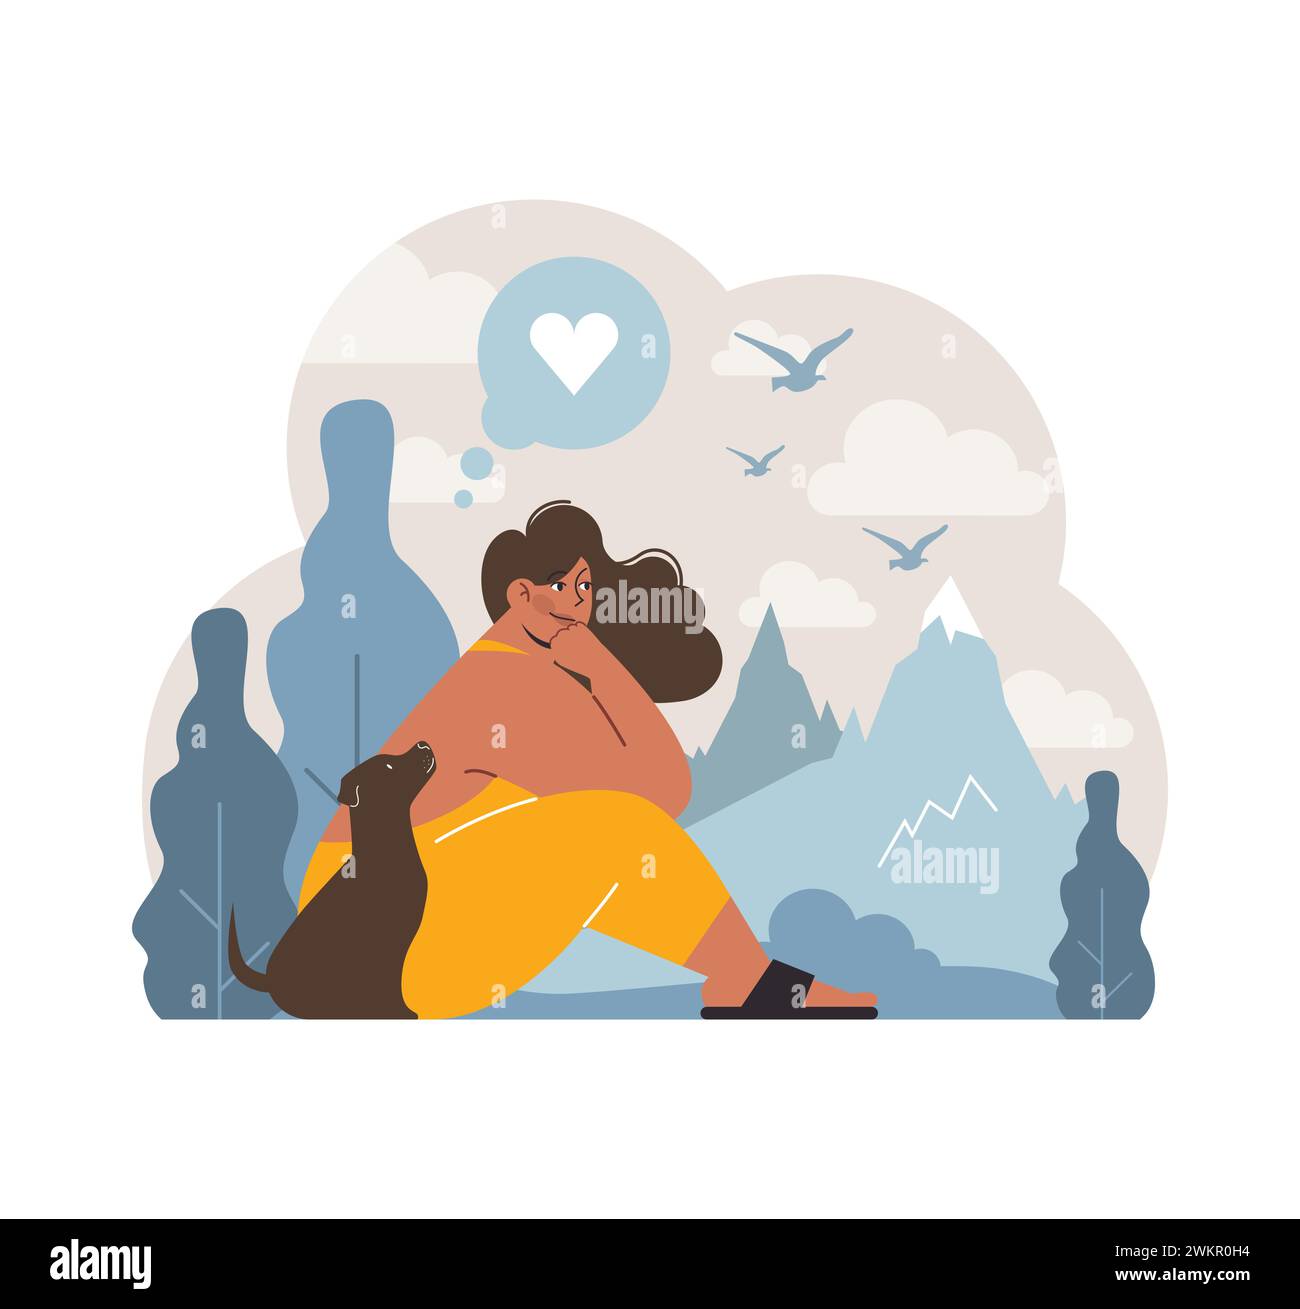 Ruhige Szene einer Frau mit ihrem Hund. Beide genießen einen ruhigen Blick auf die Berge, symbolisieren Frieden und Zufriedenheit. Gemeinsame Liebe und Glück. Illustration des flachen Vektors Stock Vektor